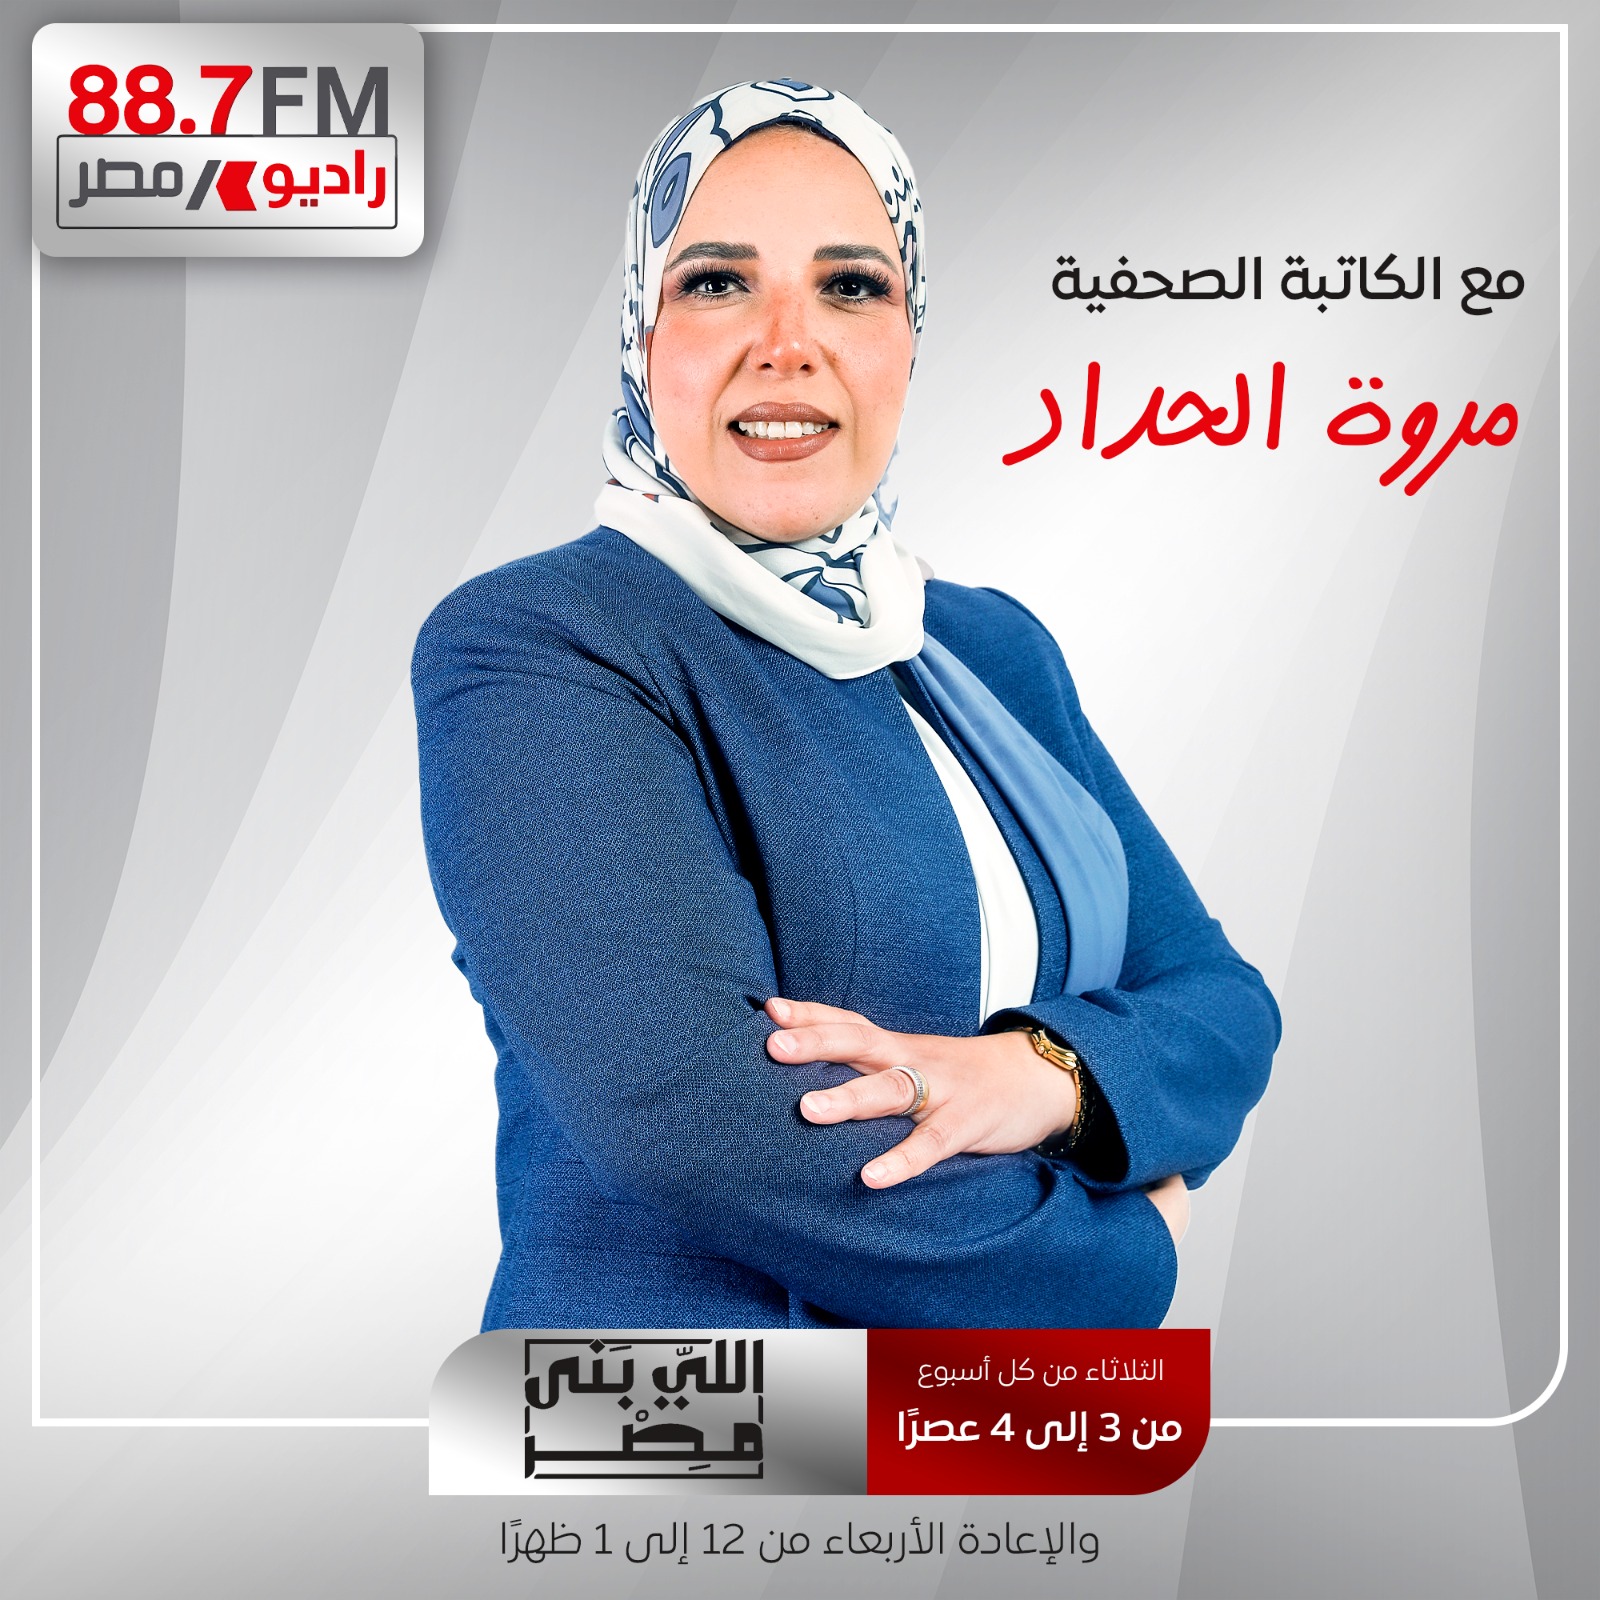 انطلاق الموسم التاسع من برنامج "اللى بنى مصر" برؤية جديدة وتناول لكافة القطاعات الاقتصادية